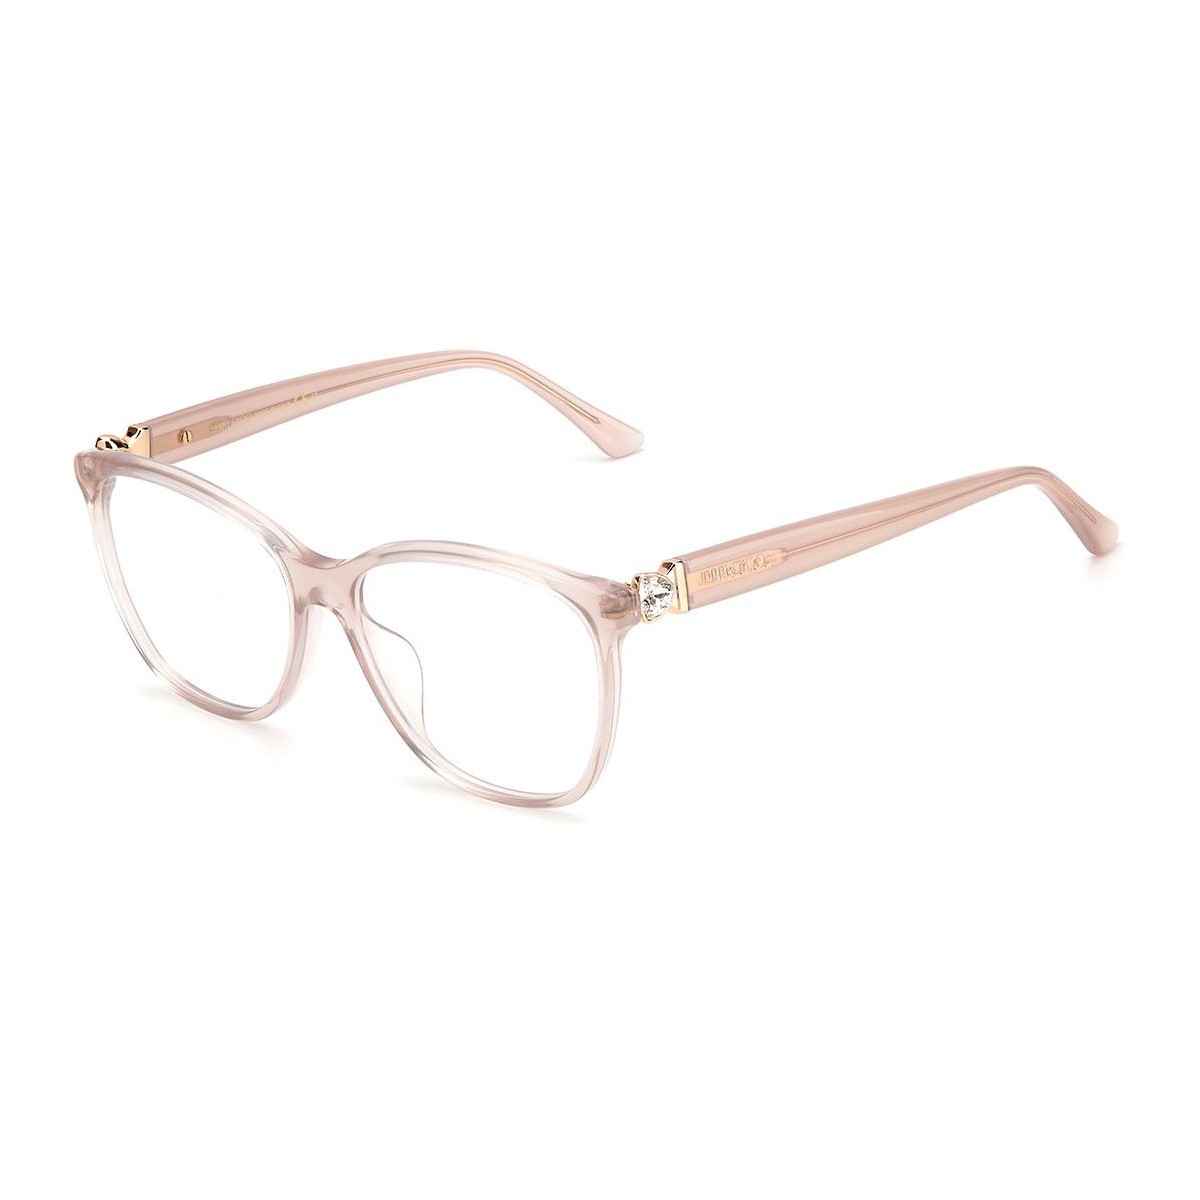 Jc318/g | Women's eyeglasses